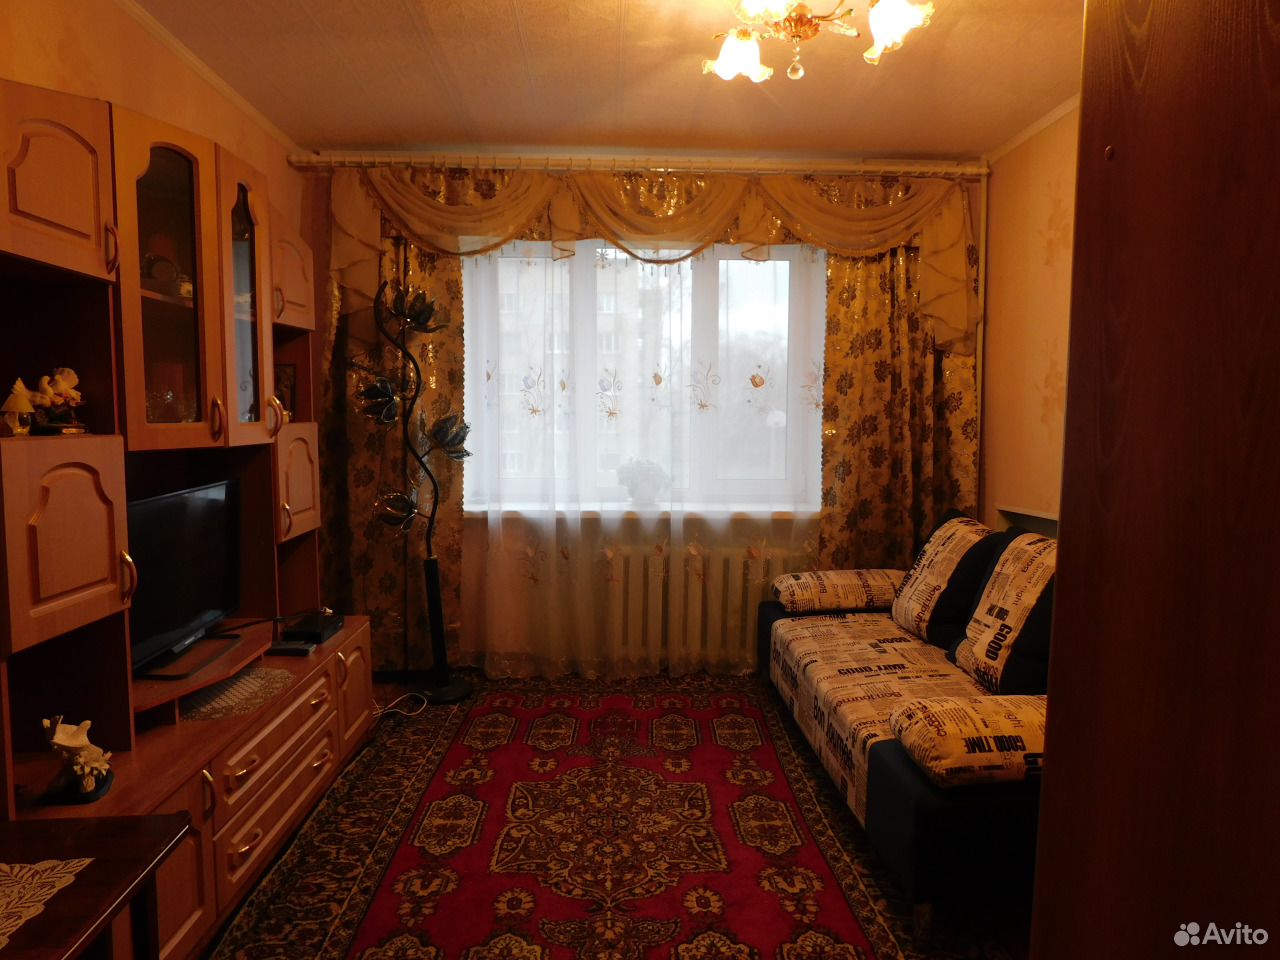 Хочу купить комнату. Продается комната. Общежитие Сызрань. Фото продаваемых комнат в г.Екатеринбурге. Московская 47 Сызрань общежитие.